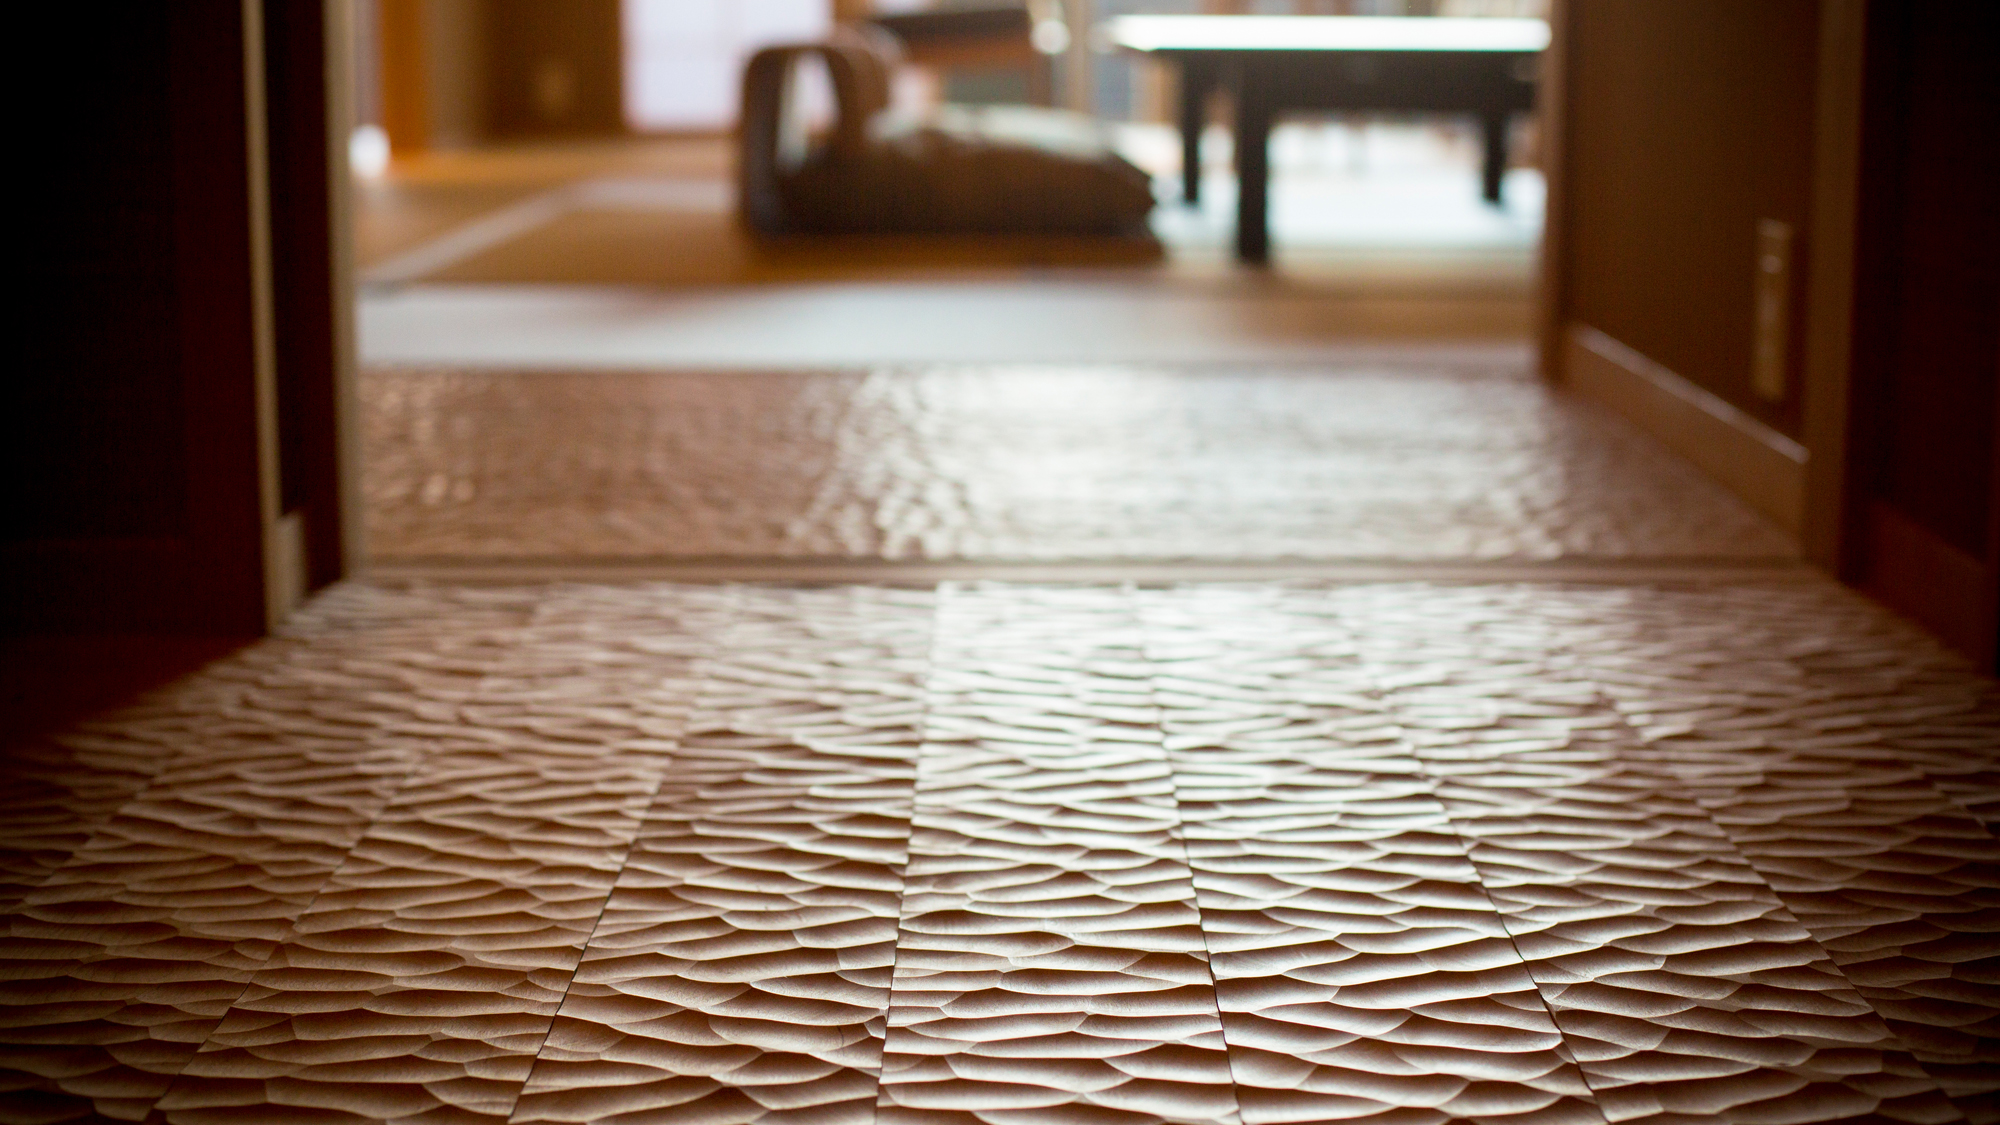 客室玄関の床板は伝統技法のなぐり加工で化粧し、凹凸のある木肌の感触が足裏に心地よく伝わります